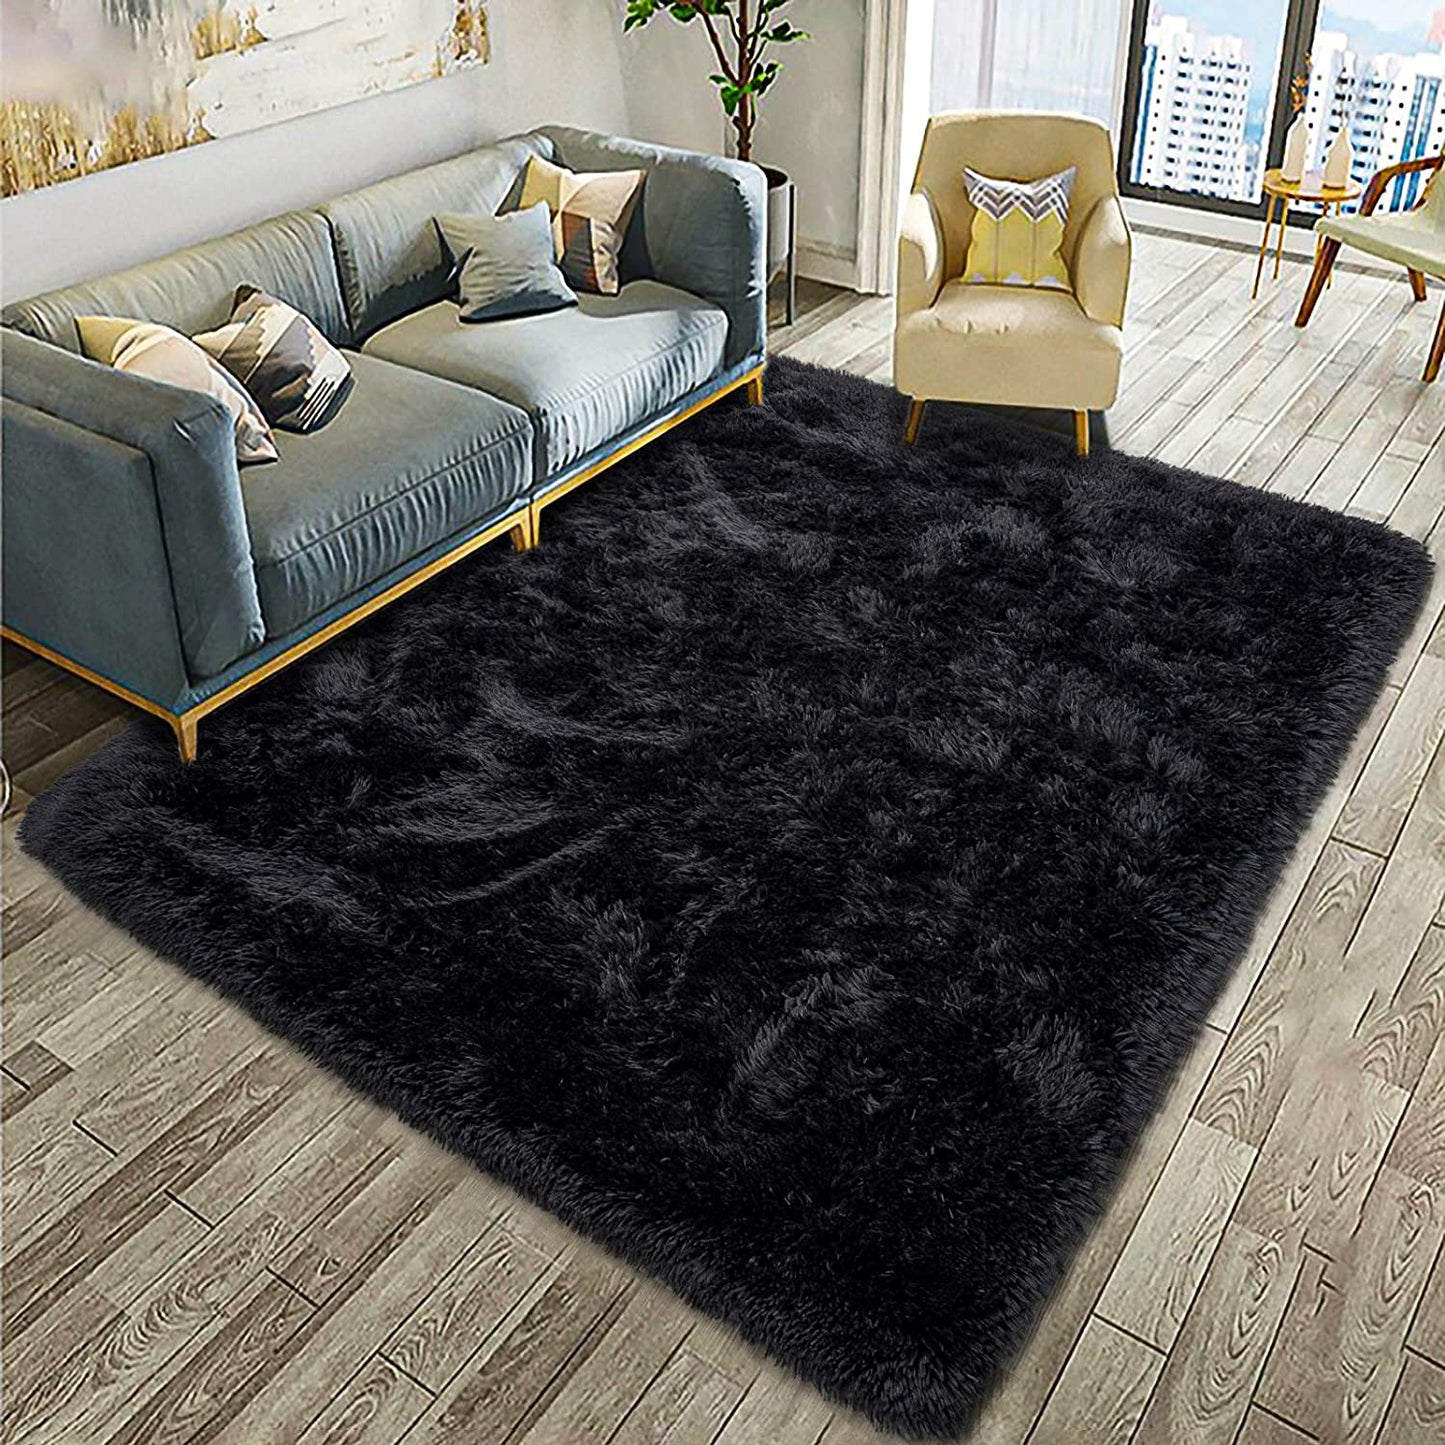 fuzzy faux fur rugs black 4